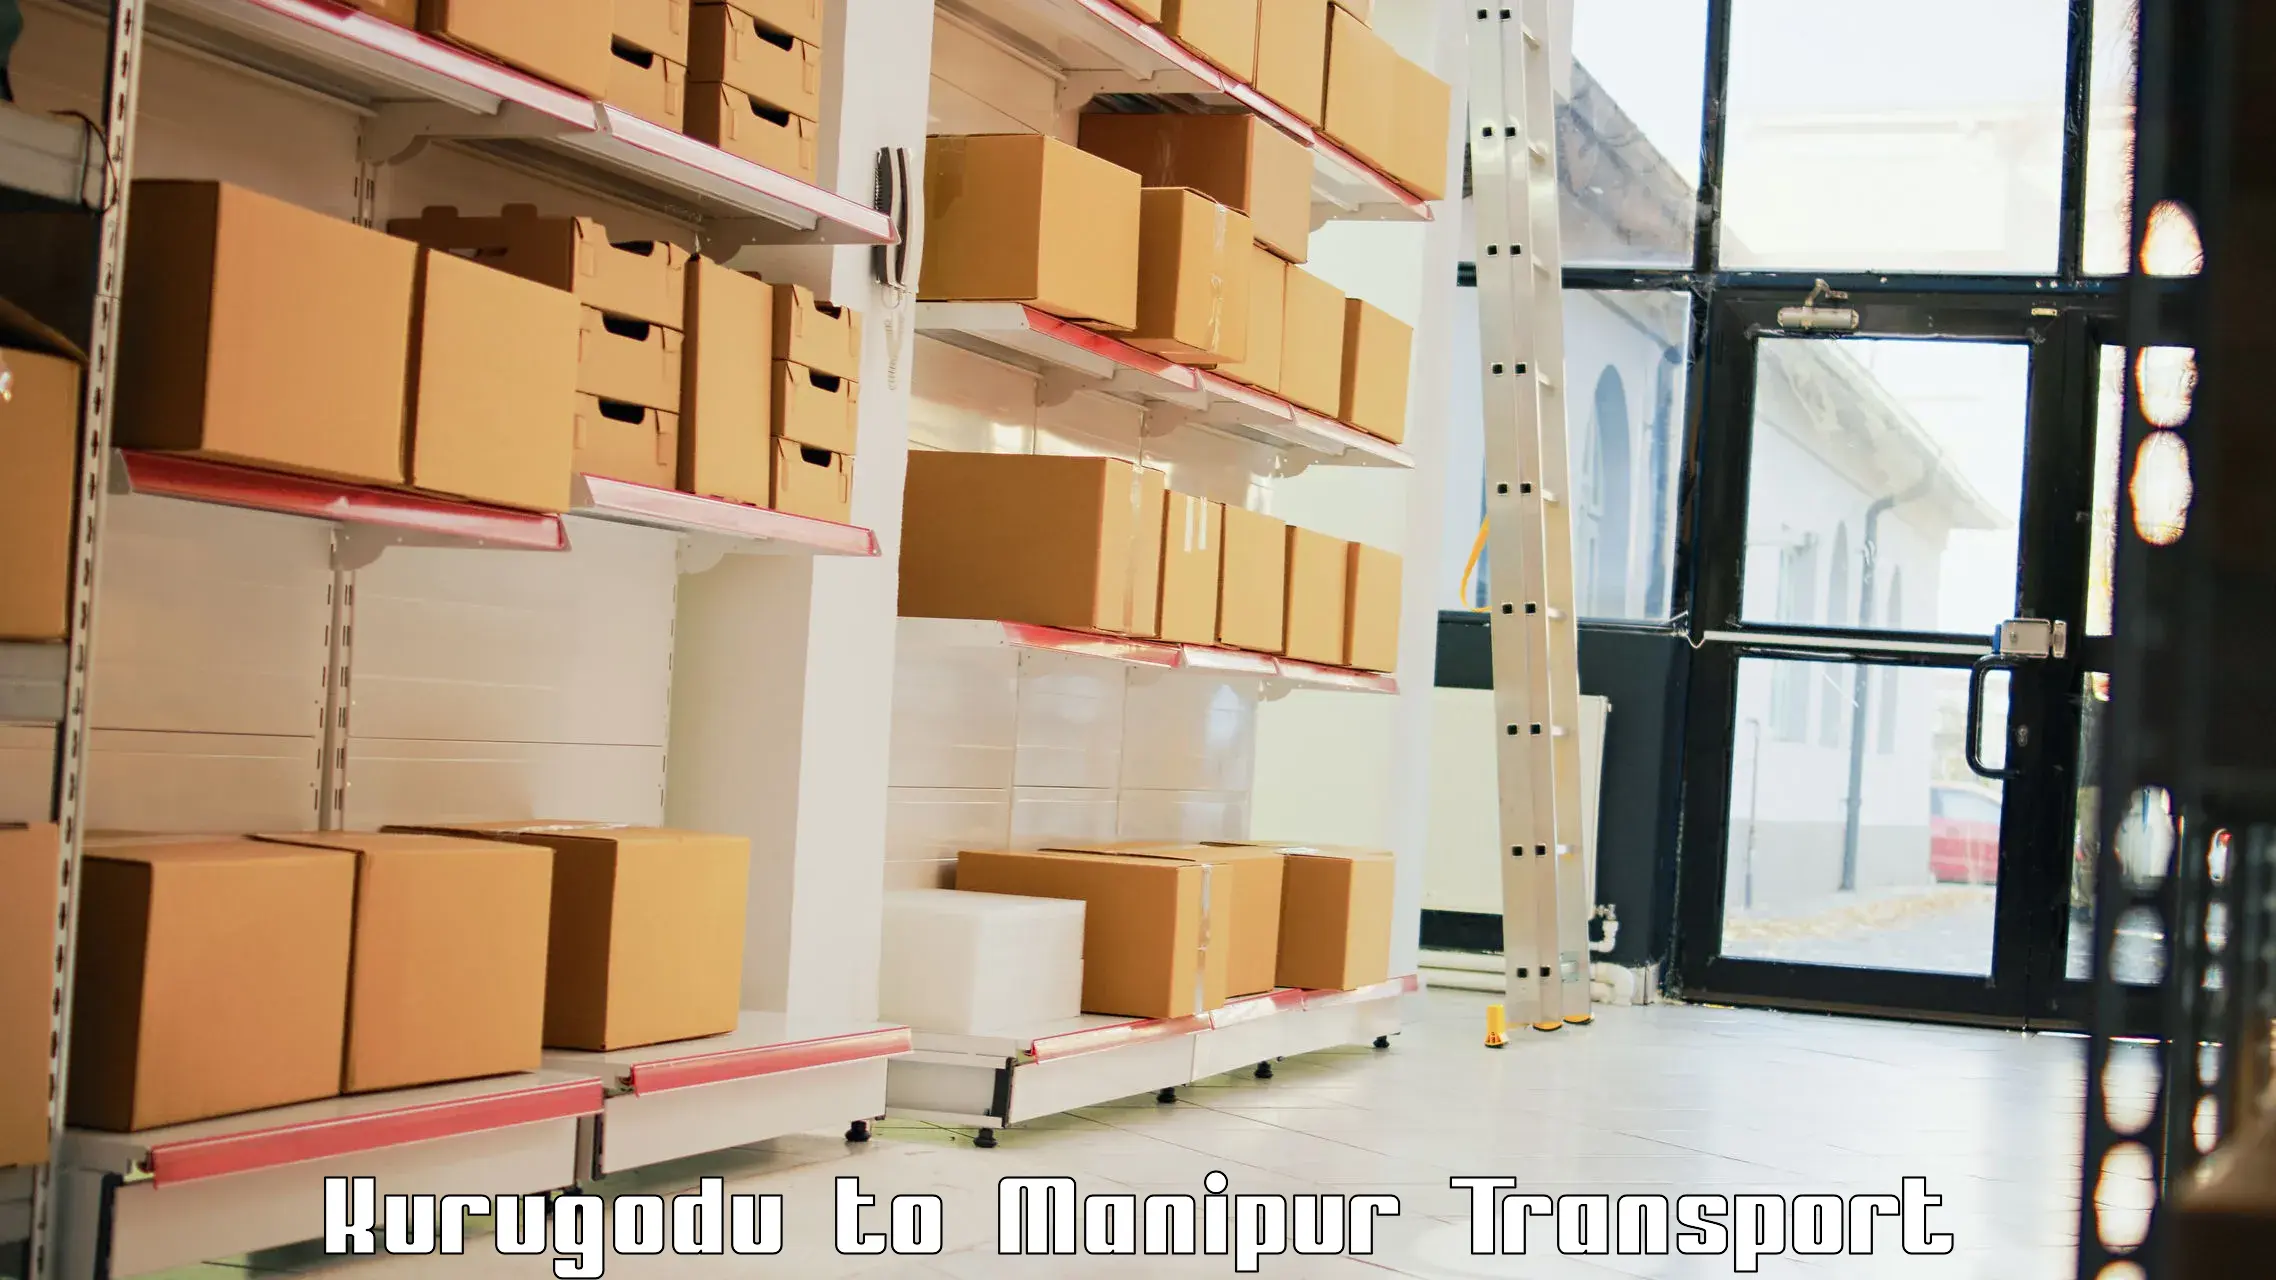 Online transport booking Kurugodu to Manipur